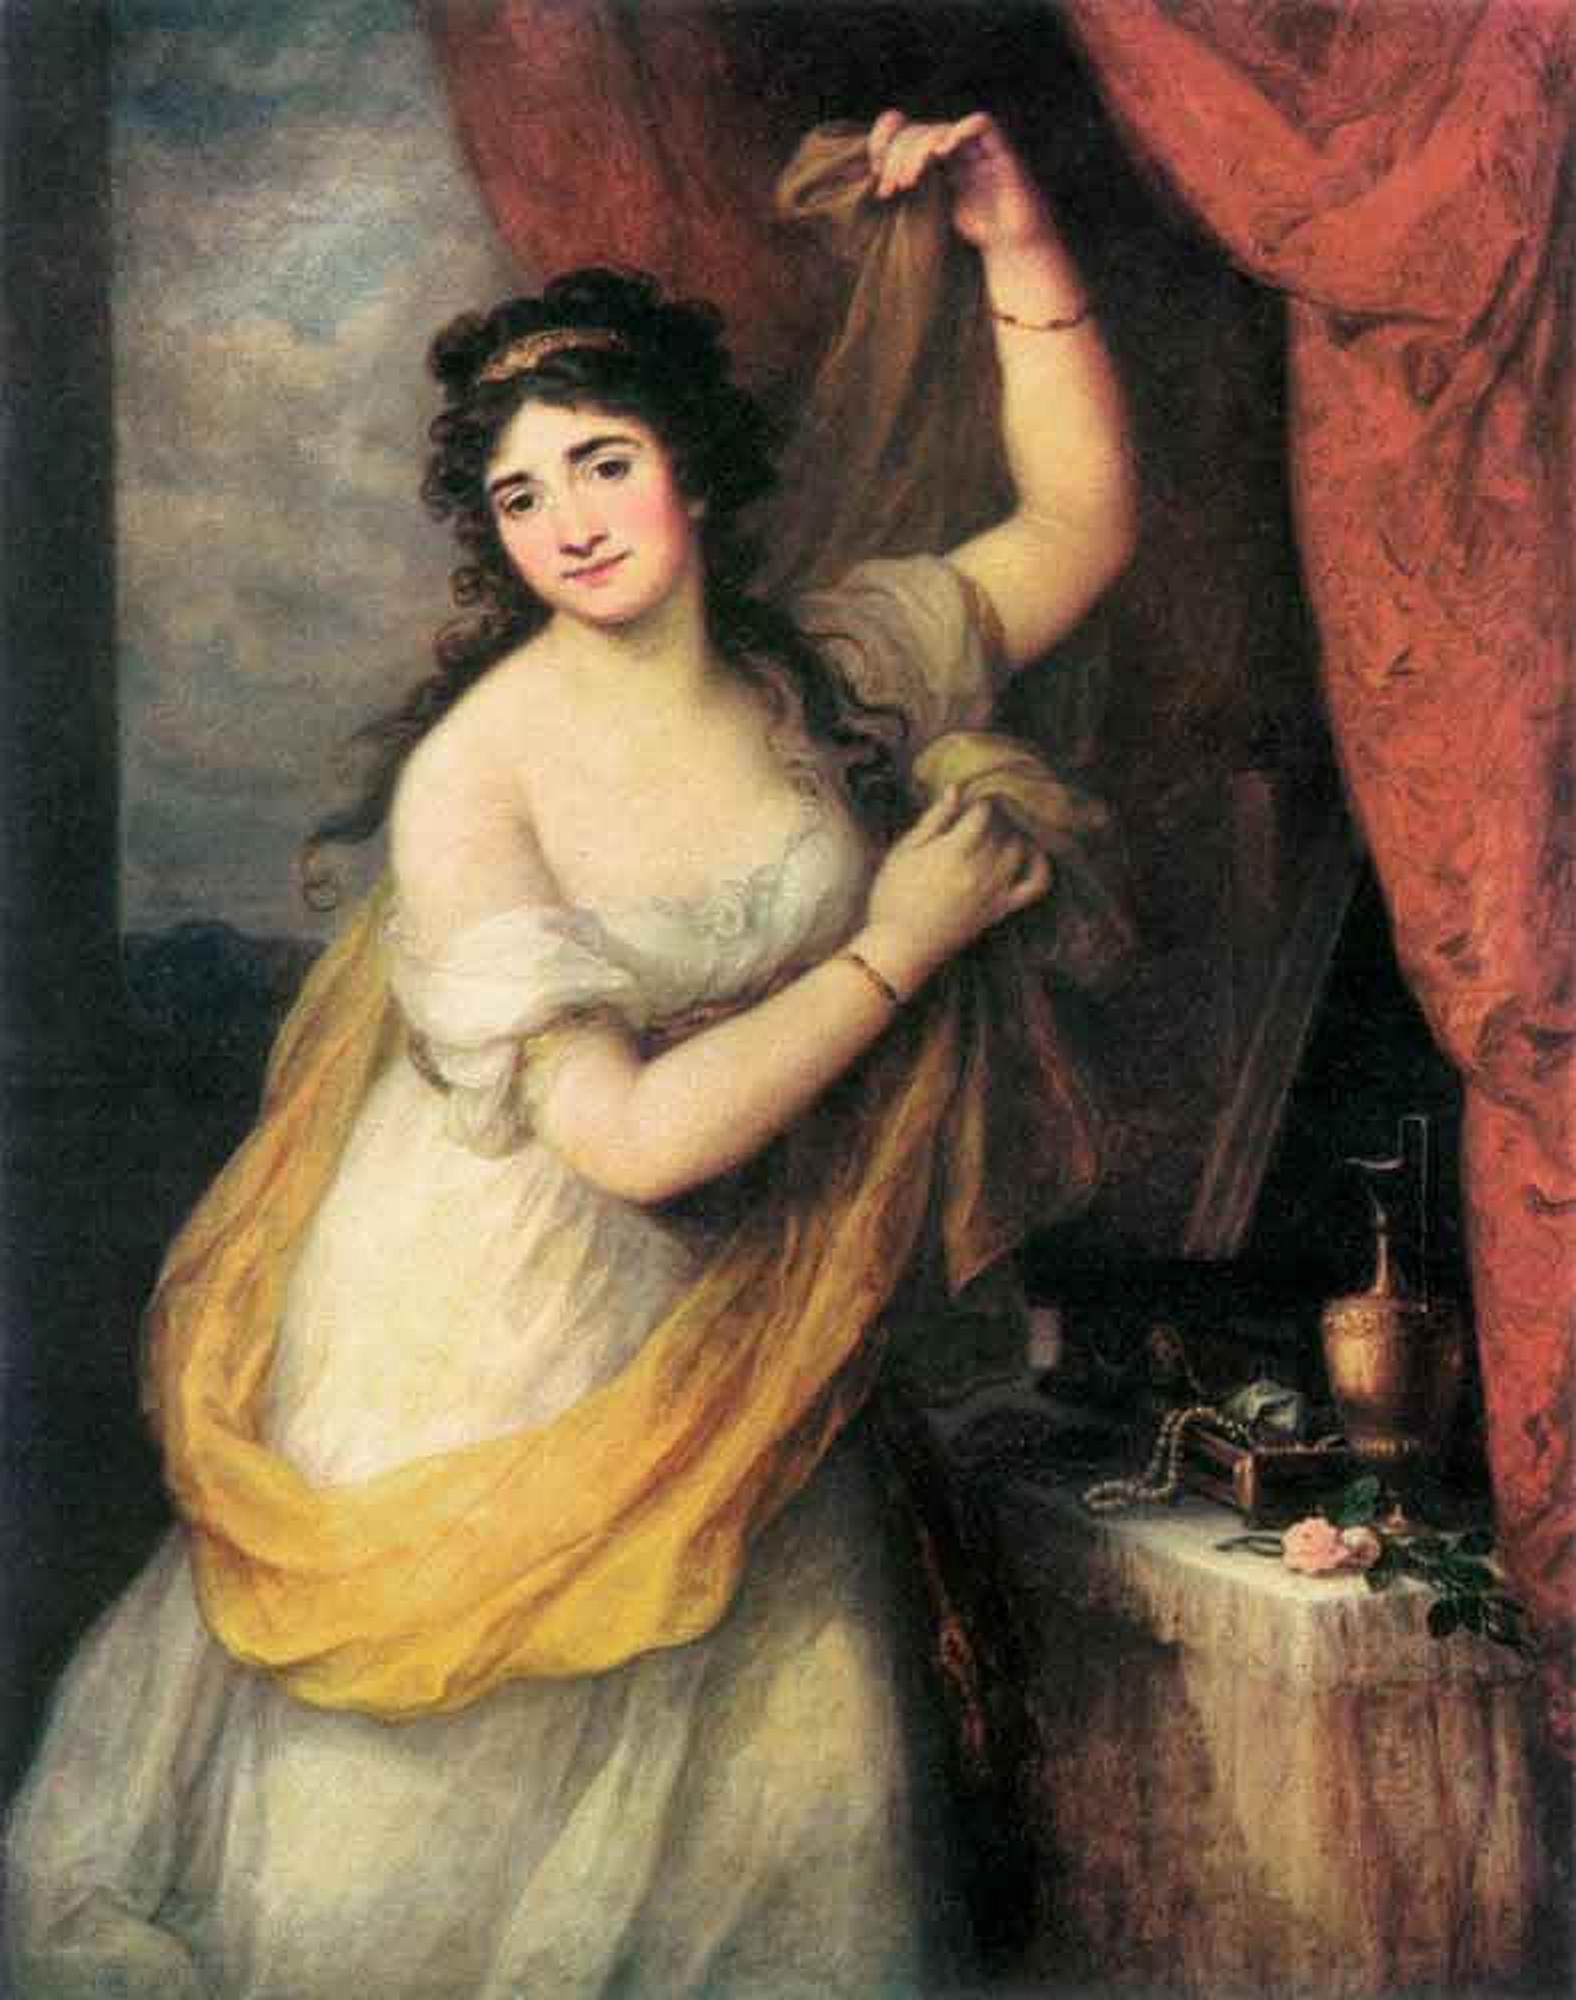 Как звали женщину изображенную на портрете. Ангелика Кауфман женский портрет. Кауфман, Ангелика (1741-1807) автопортрет.